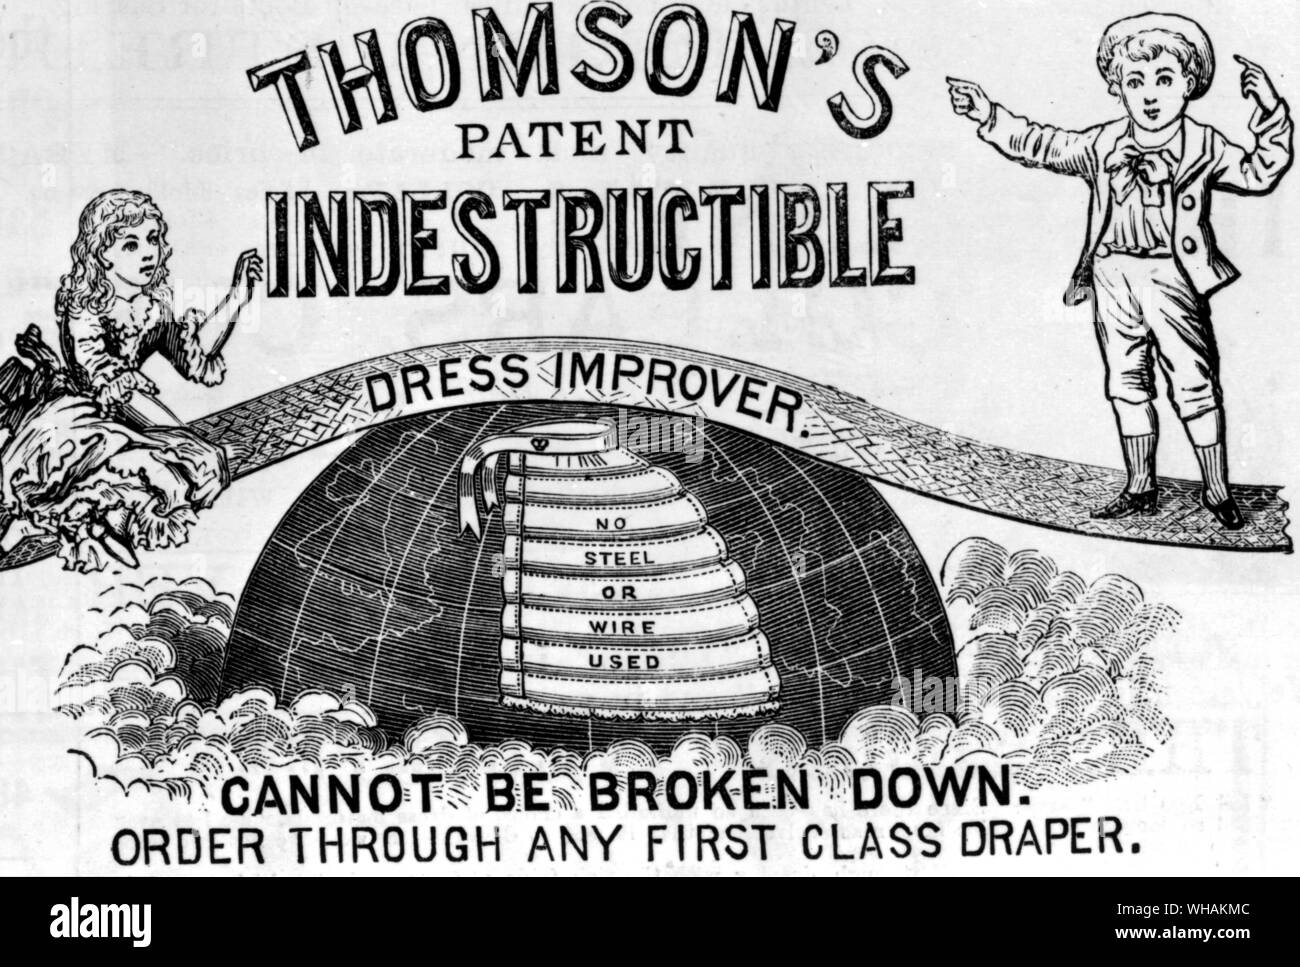 Die Königin Dezember 11 1886. Unzerstörbar Kleid improver Stockfoto